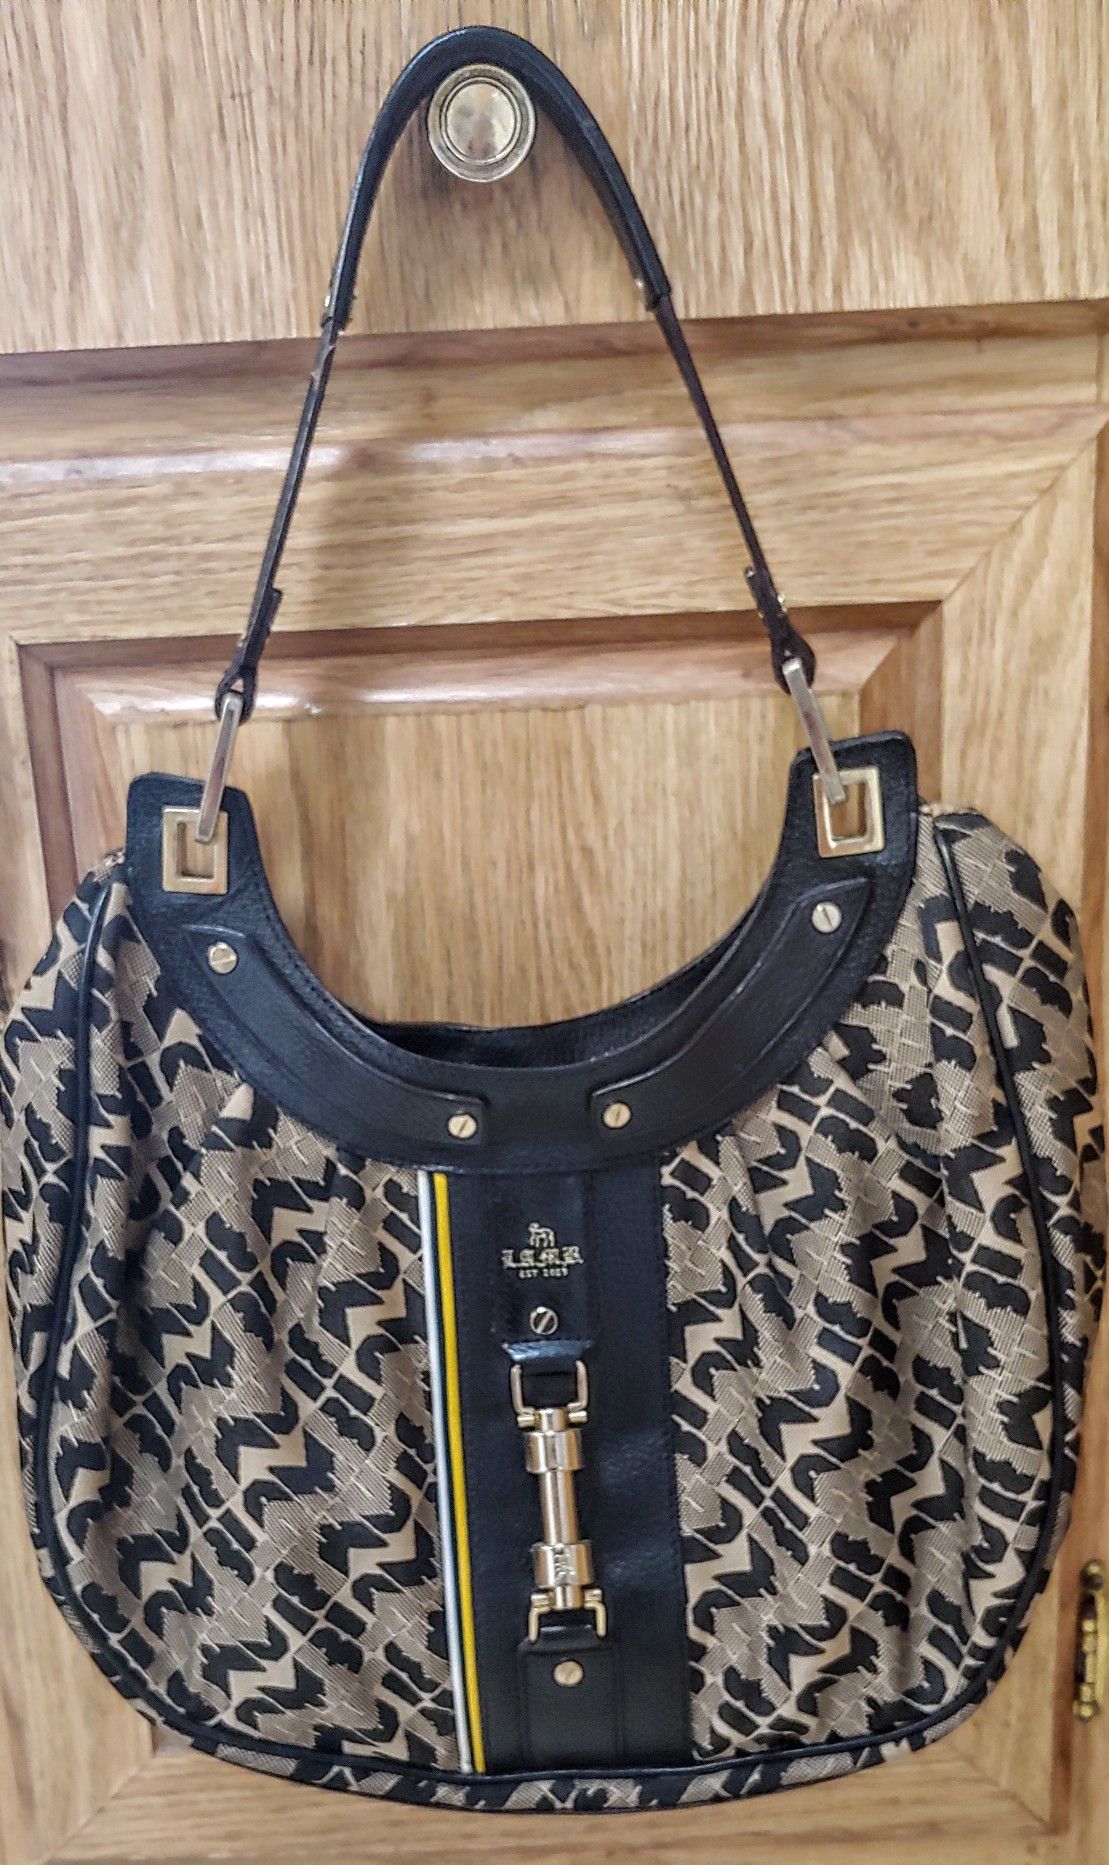 L. A .M.B. Shoulder Bag large purse by Gwen Stefani